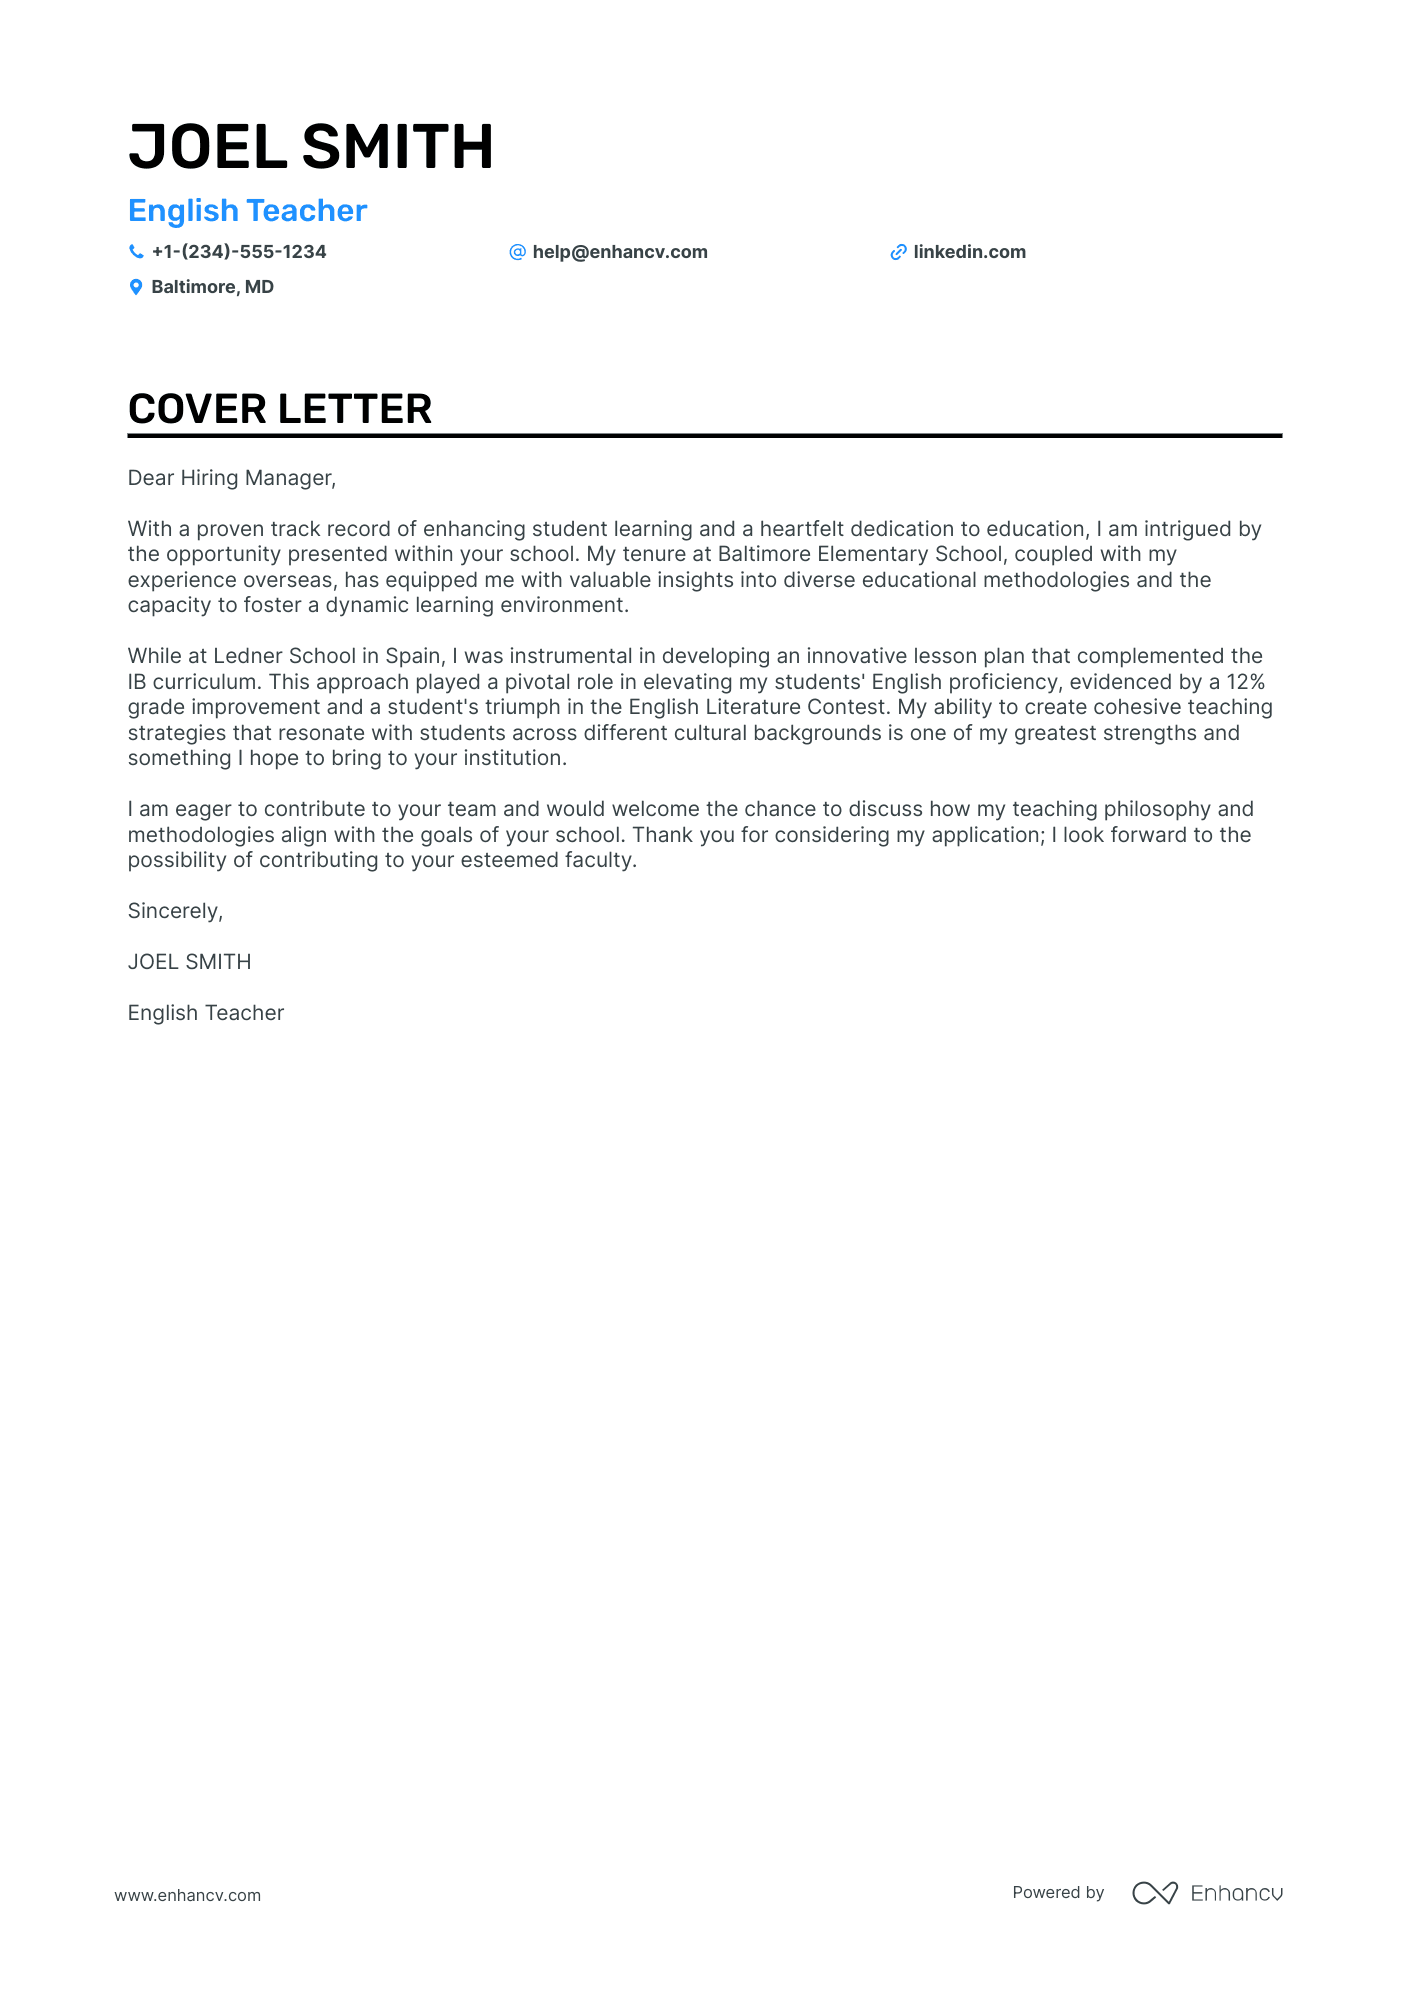 English Teacher cover letter